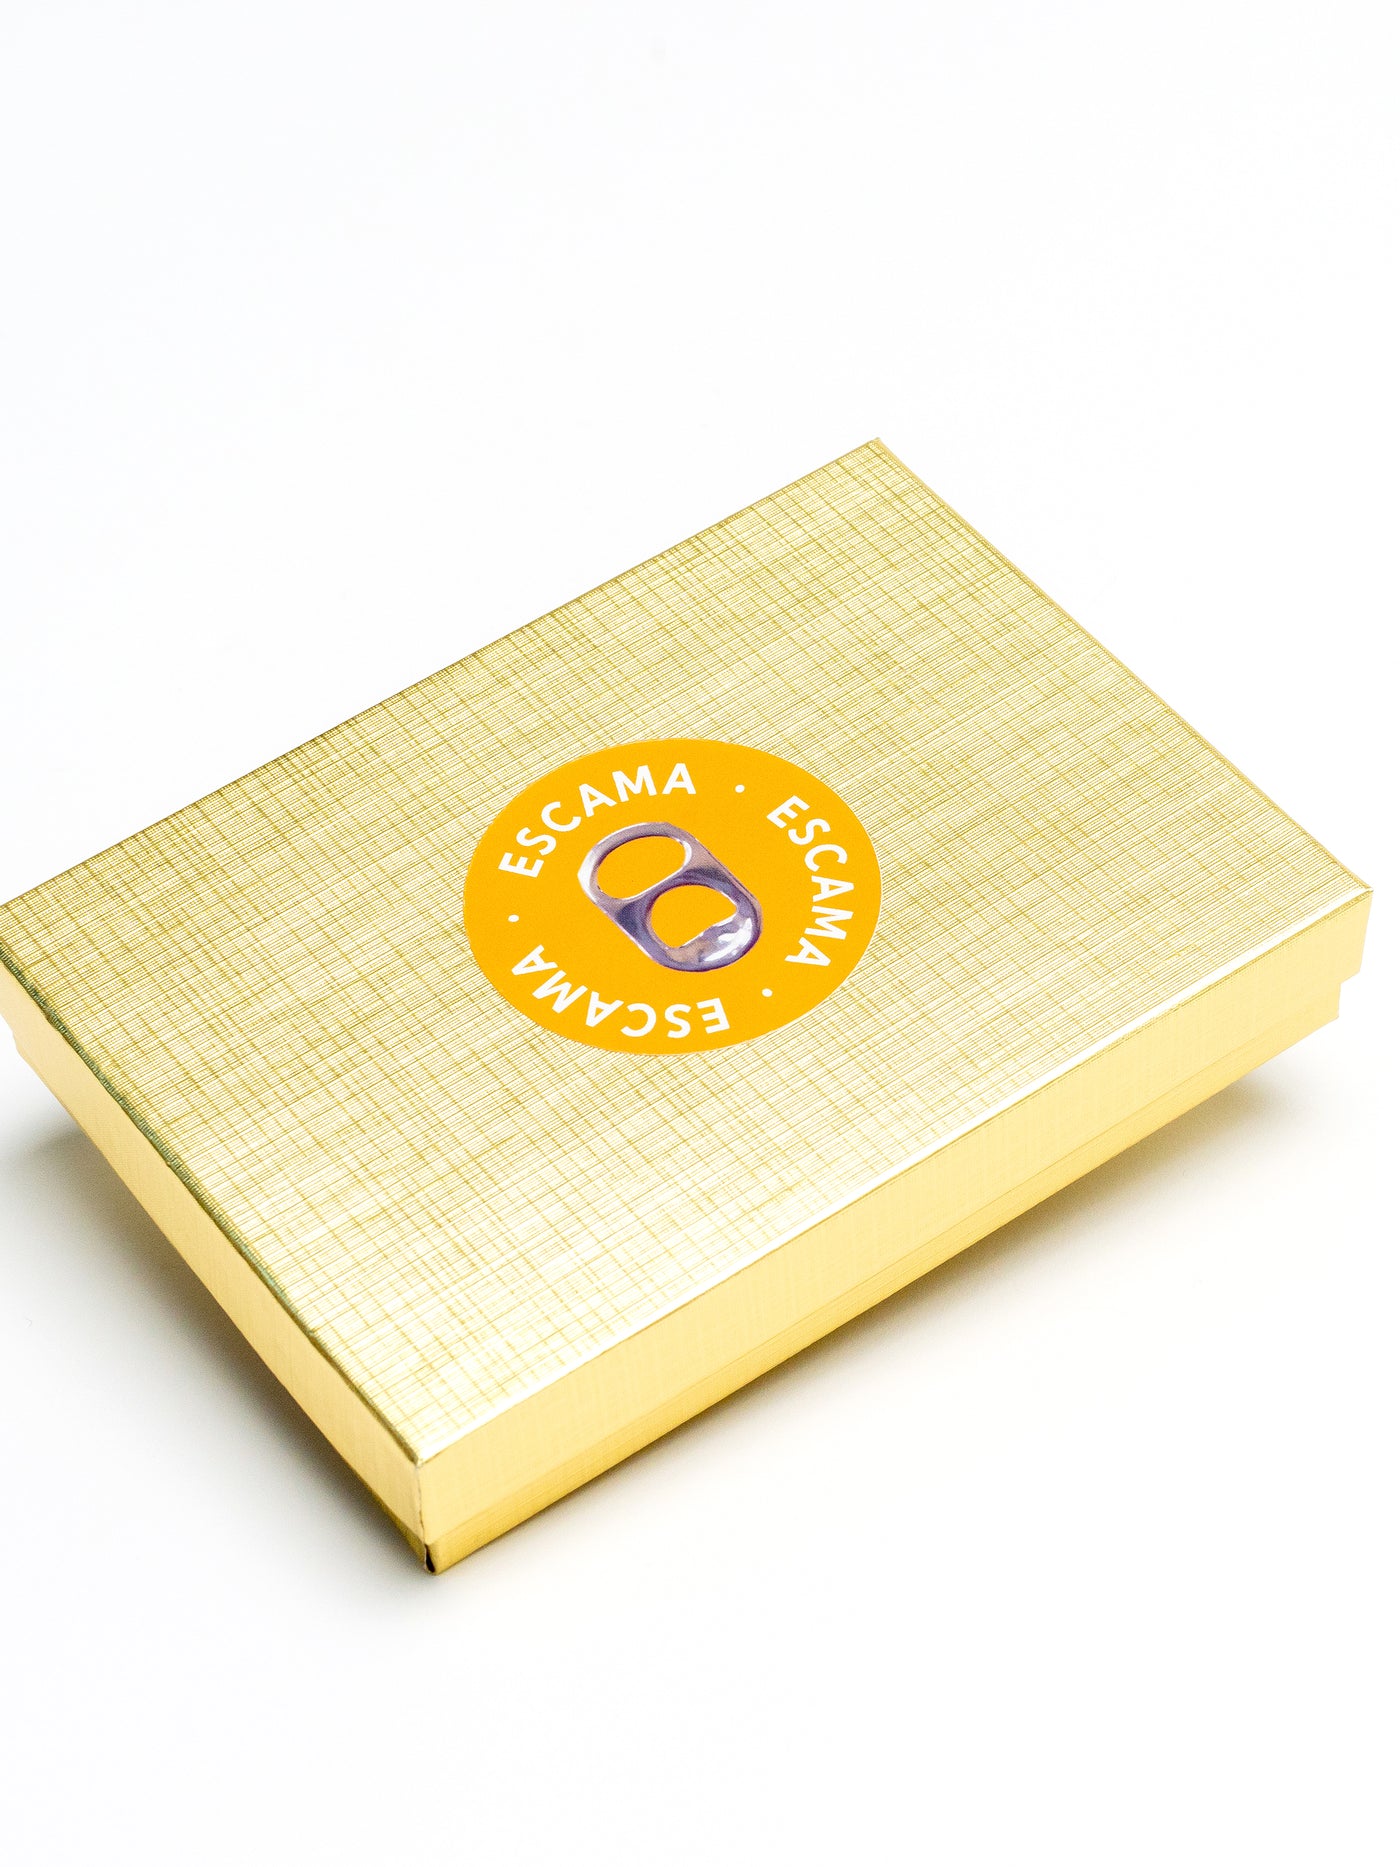 alt="gift box for alt earrings from pop tabs - escama studio"